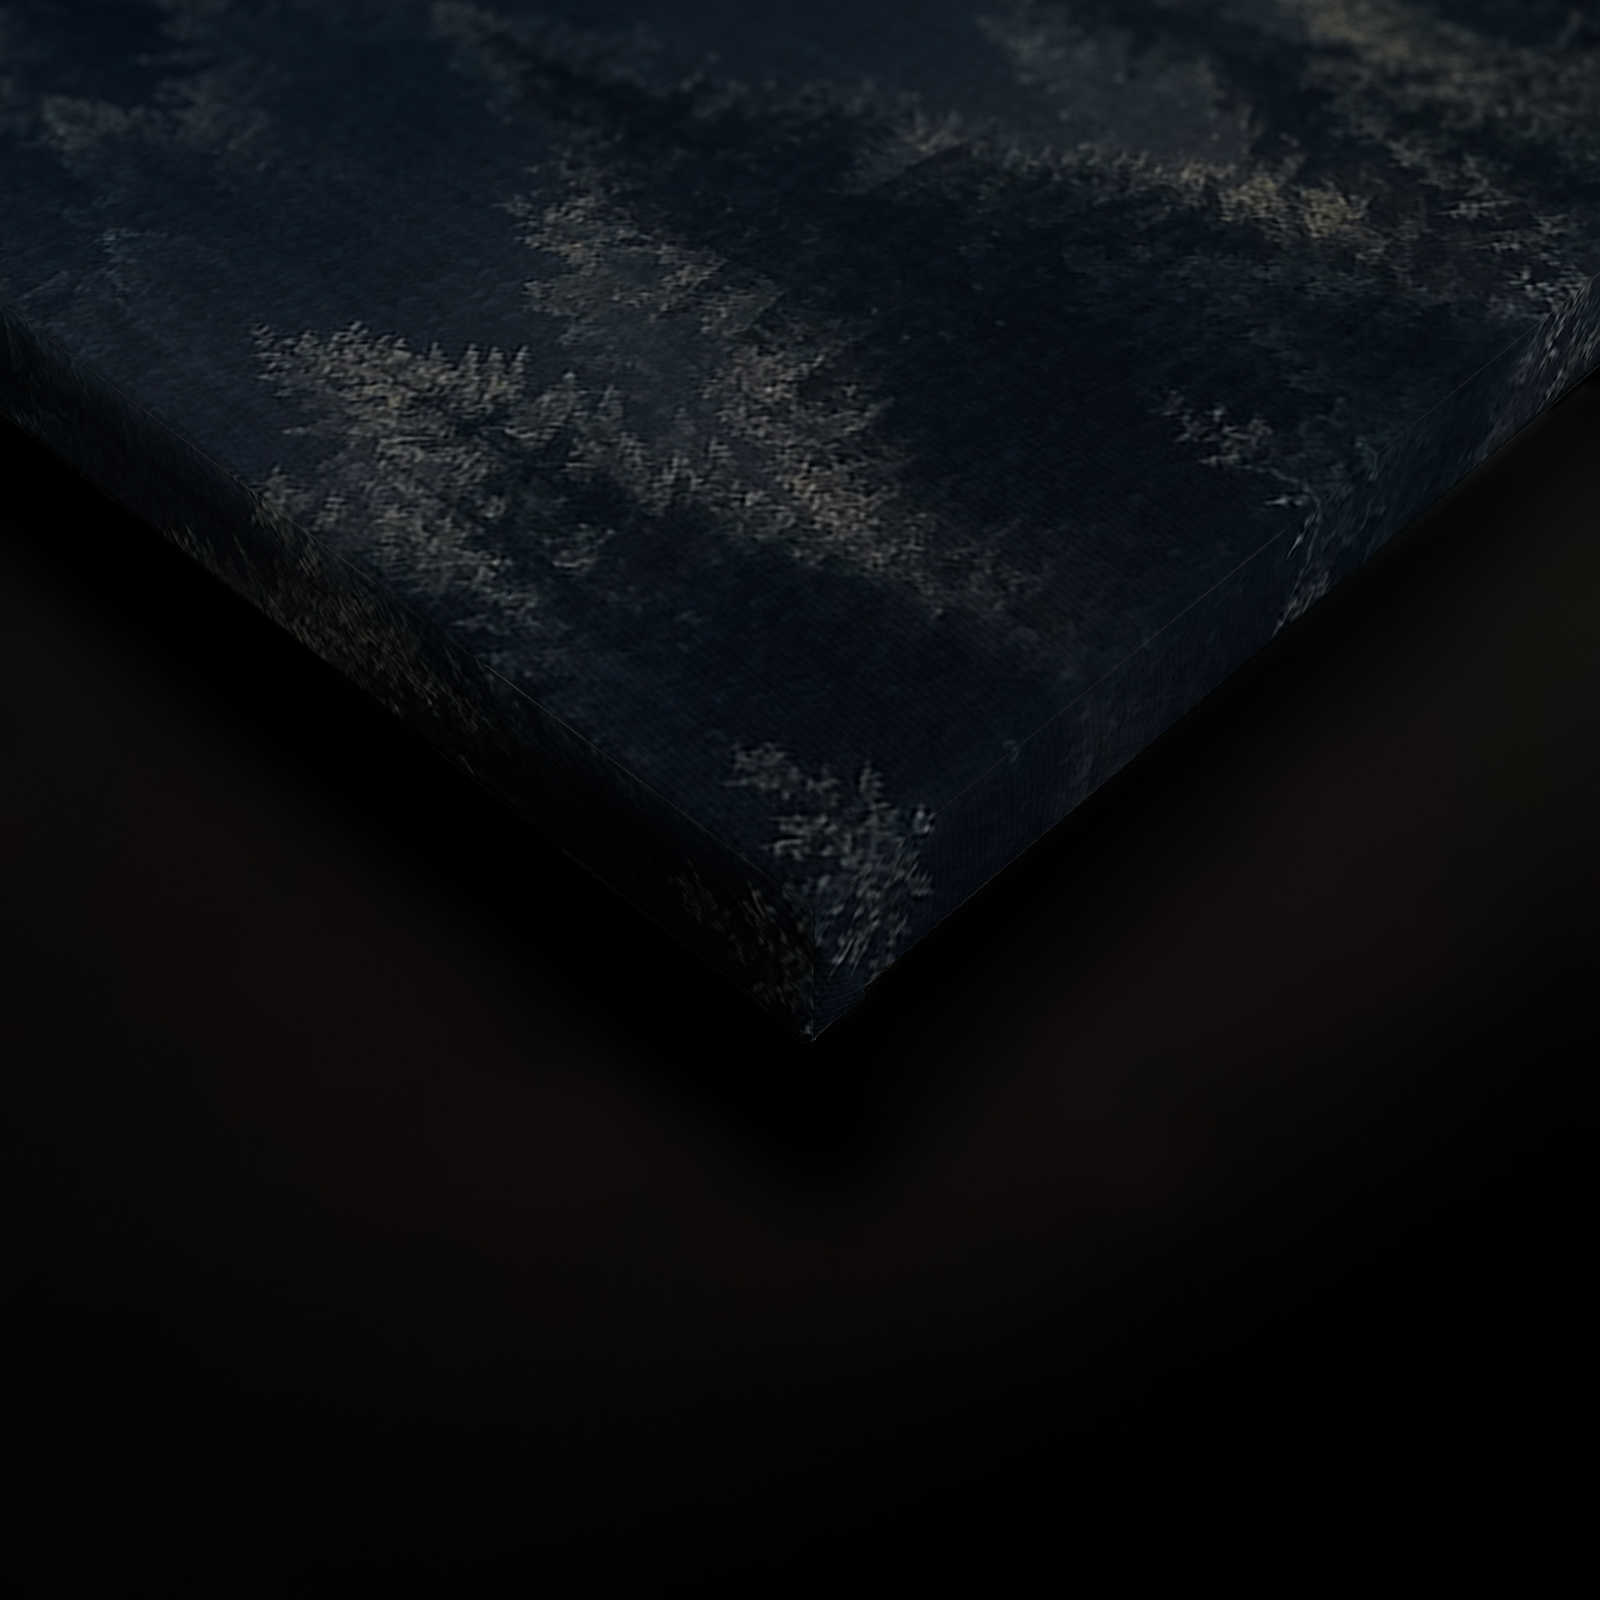             Quadro su tela con paesaggio forestale su lino struttura ottica - 0,90 m x 0,60 m
        